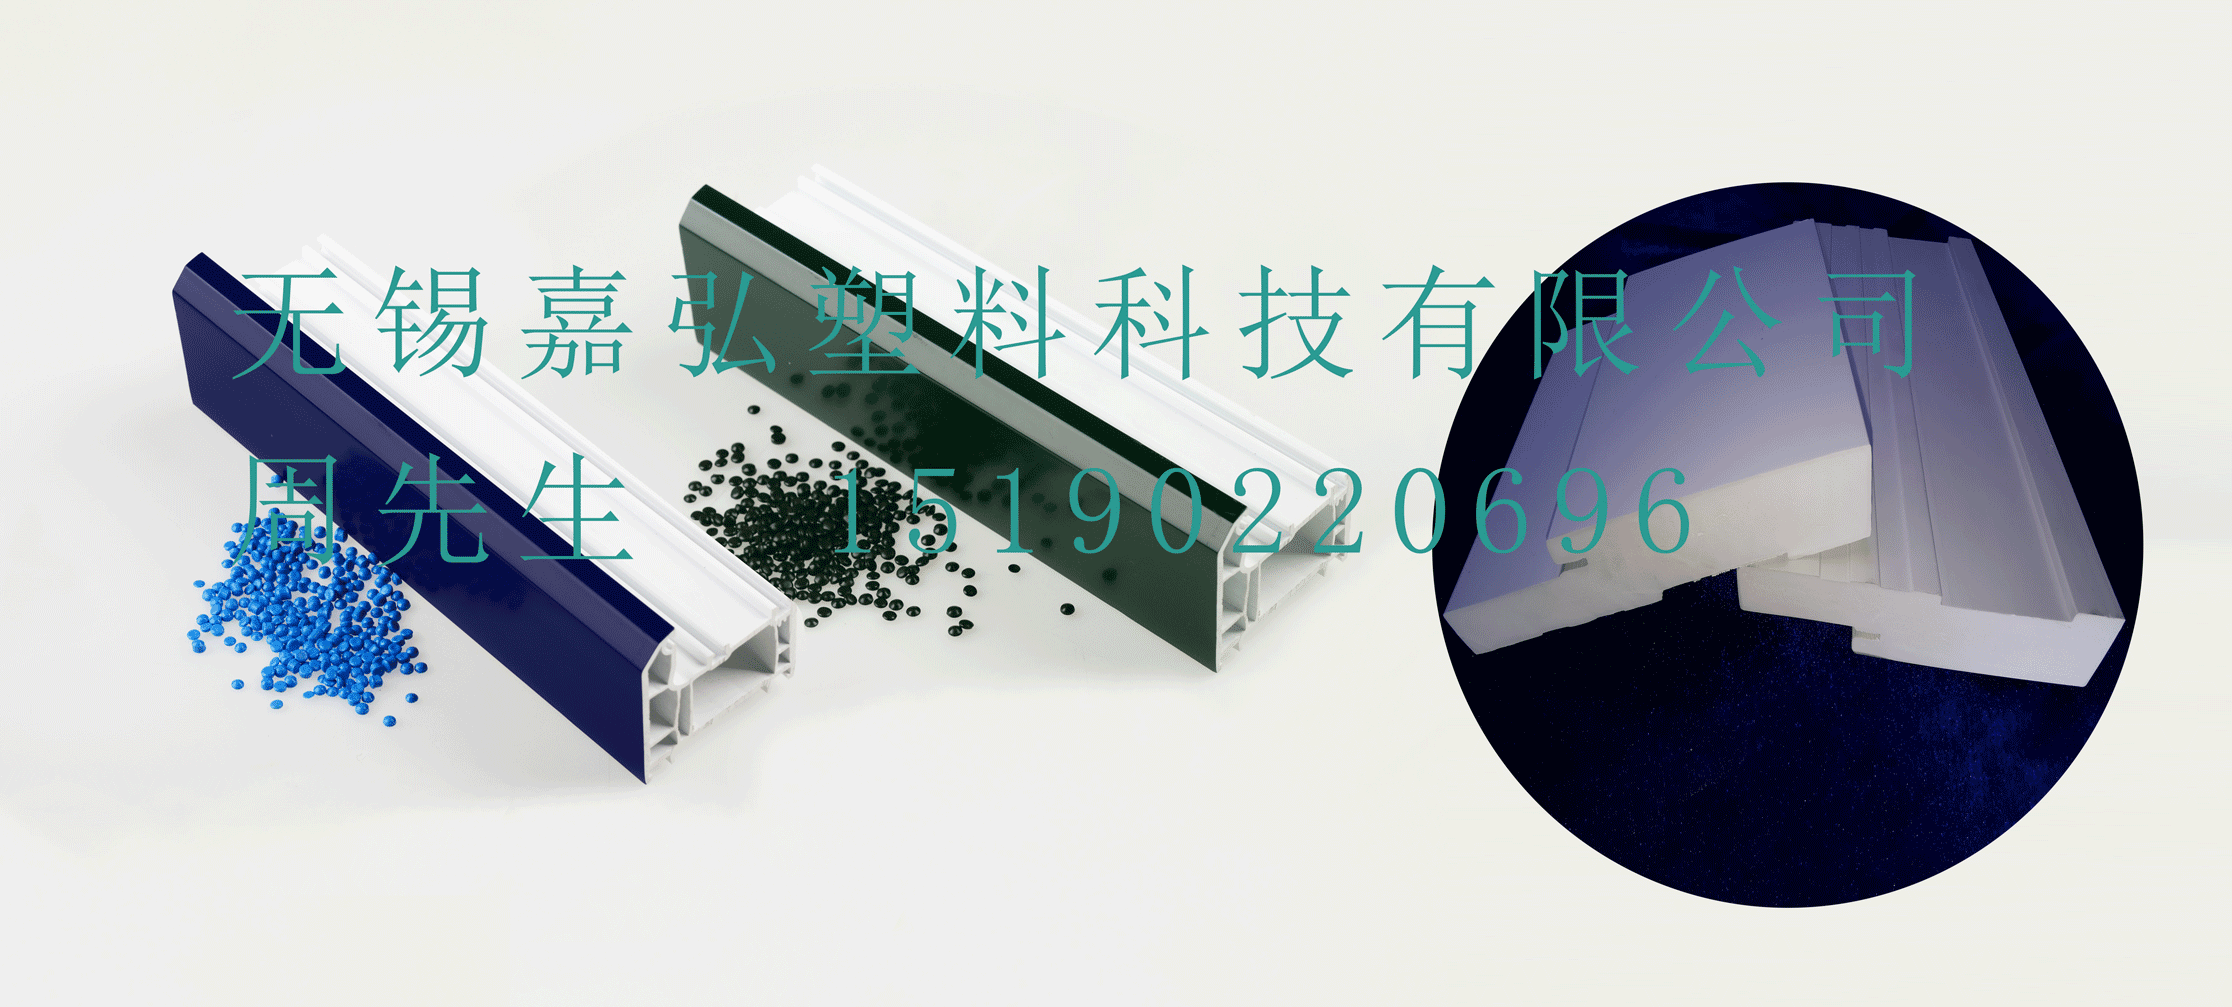 BOB官方网站（中国）集团有限公司的PVC型材共挤层用PVC粒料产品在门窗型材表面涂覆包裹表层生产中的应用和技术优势有哪些？